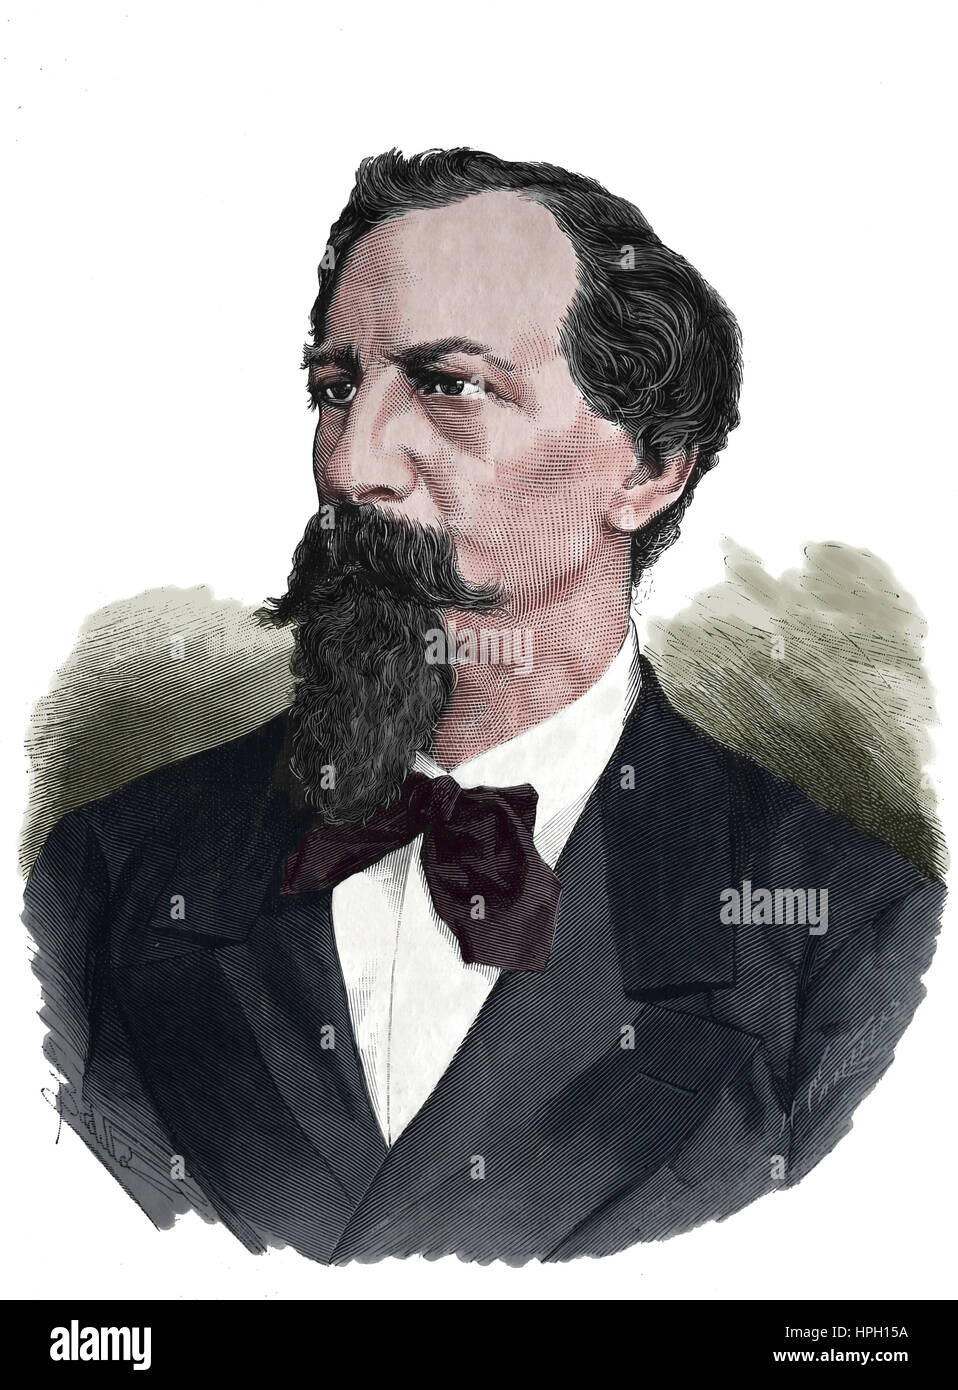 Ferdinand II. von Portugal (1816-1885). Porträt. Kupferstich, 1882. Die spanischen und amerikanischen Illustration, 1882. Spanien. Stockfoto